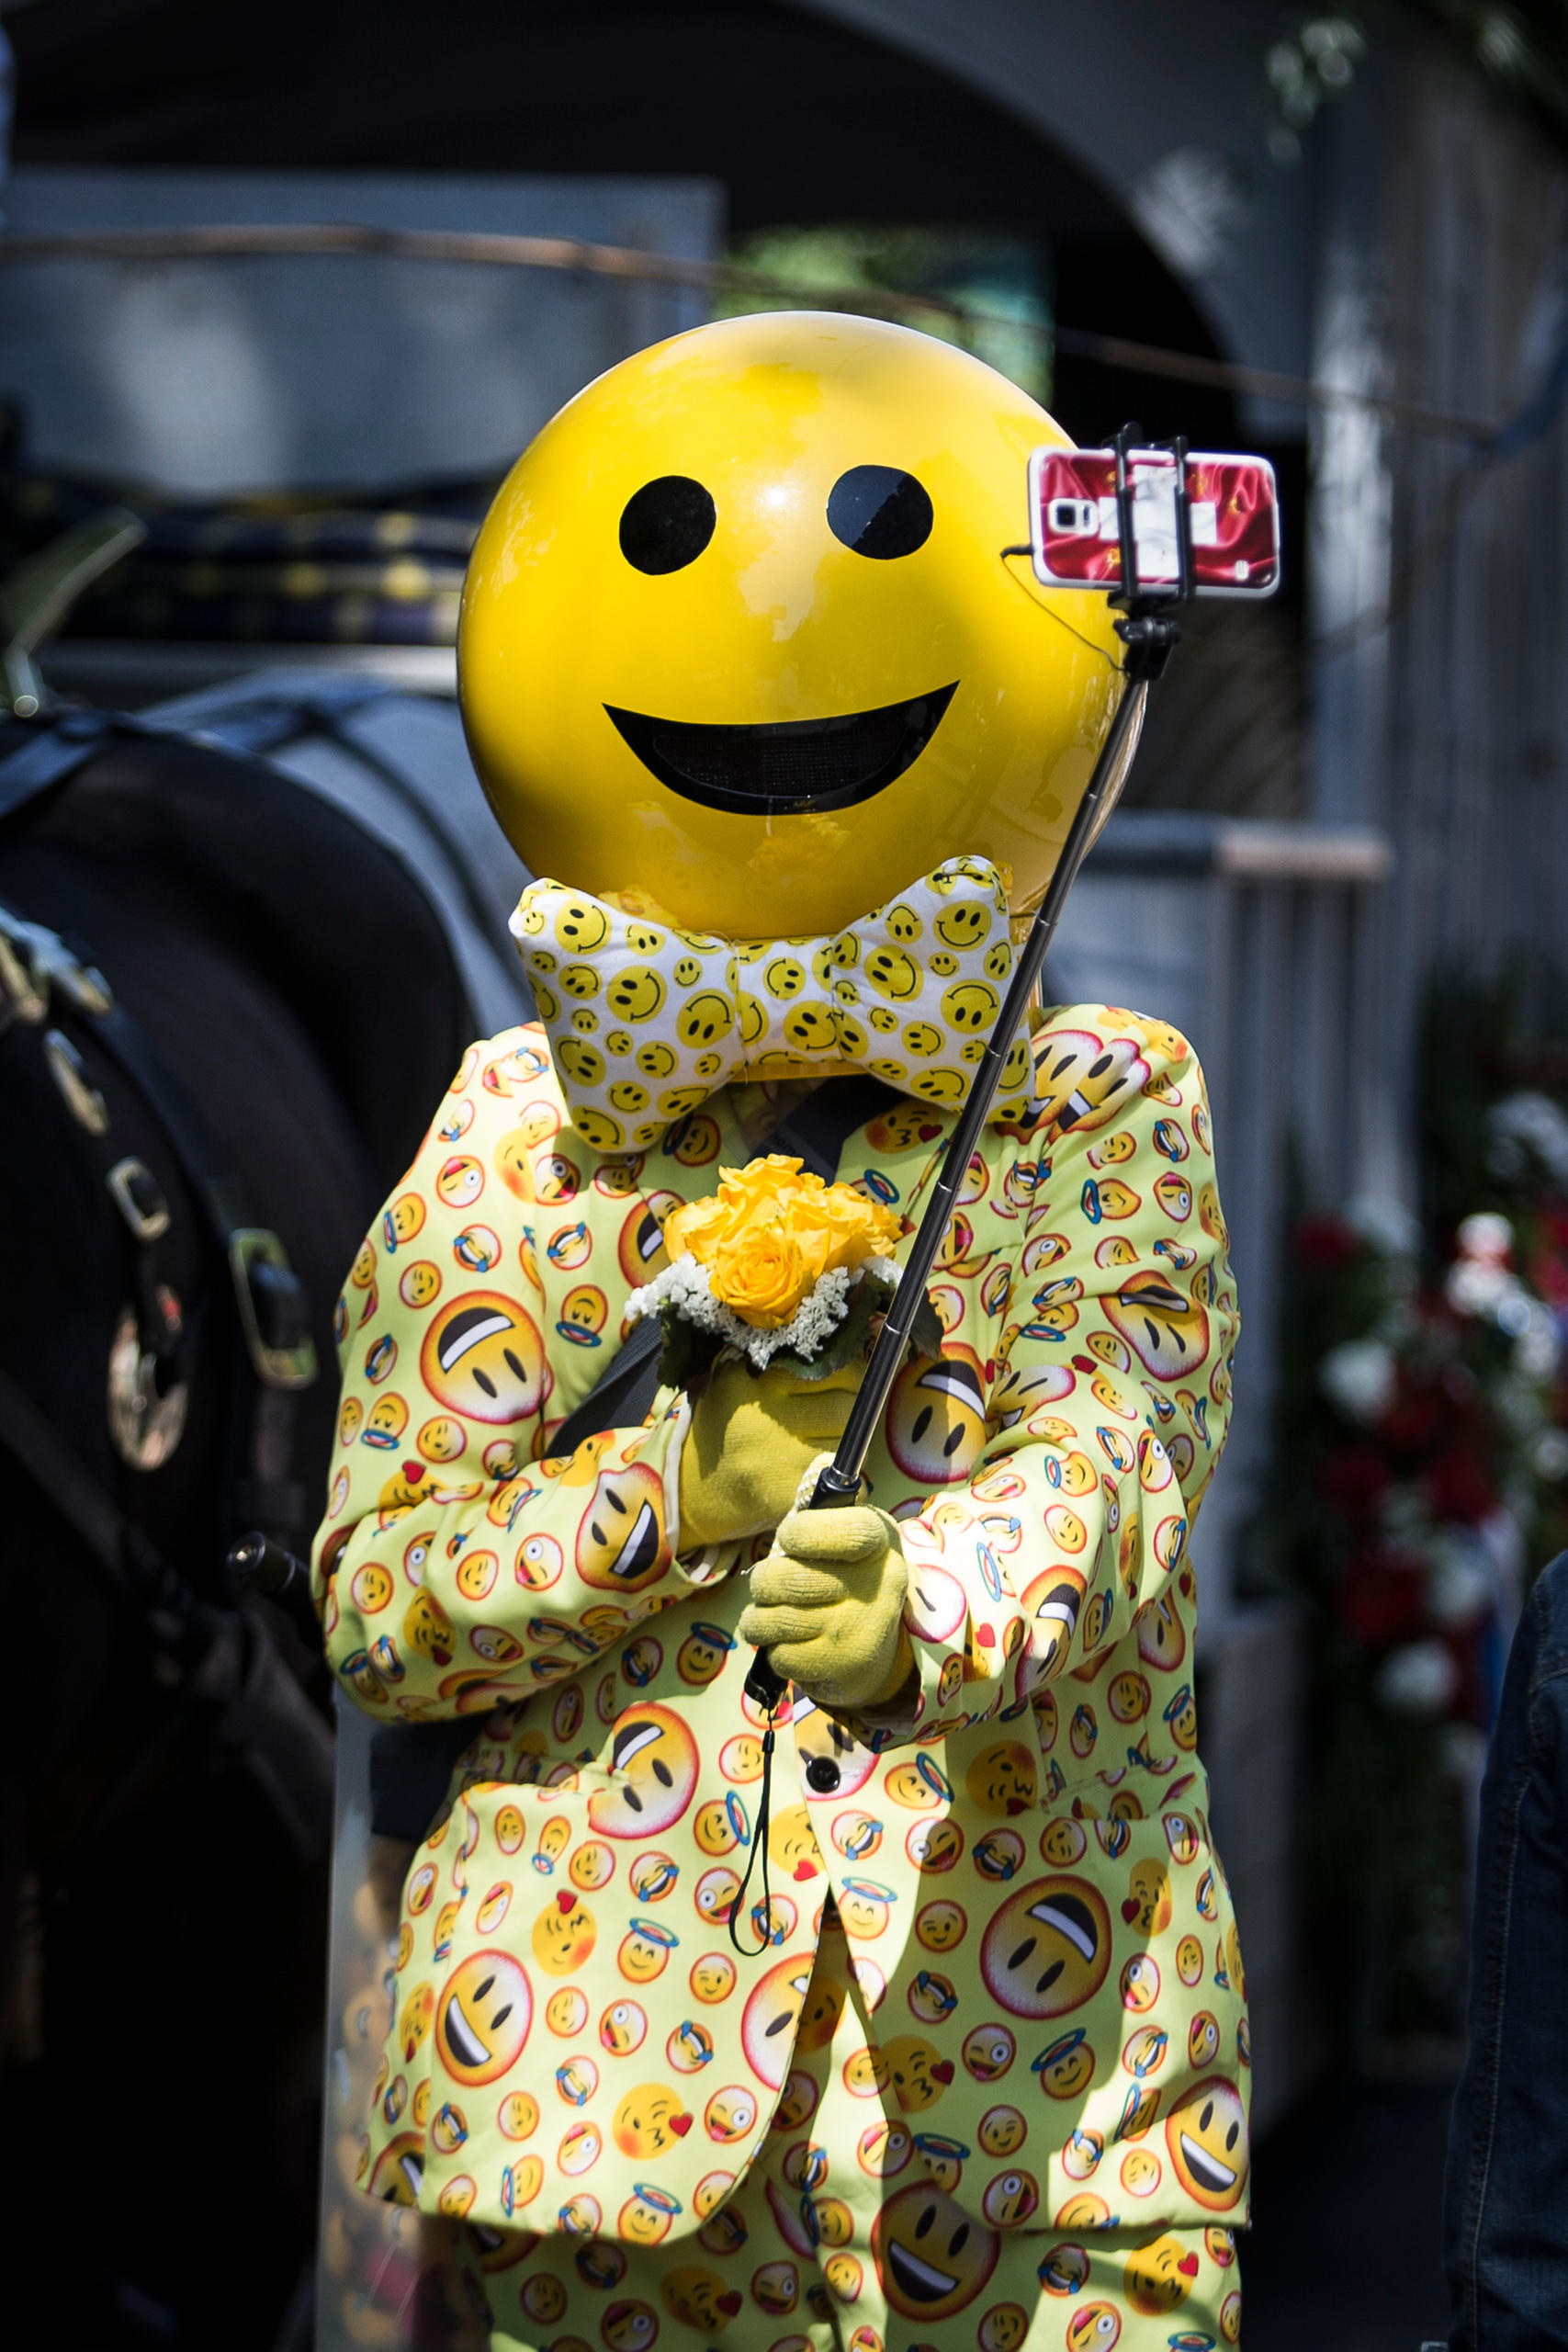 رجل يرتدي ملابس عليها صور ابتسامات ويحمل هاتفا ذكيا ويلتقط صورة سلفي لنفسه